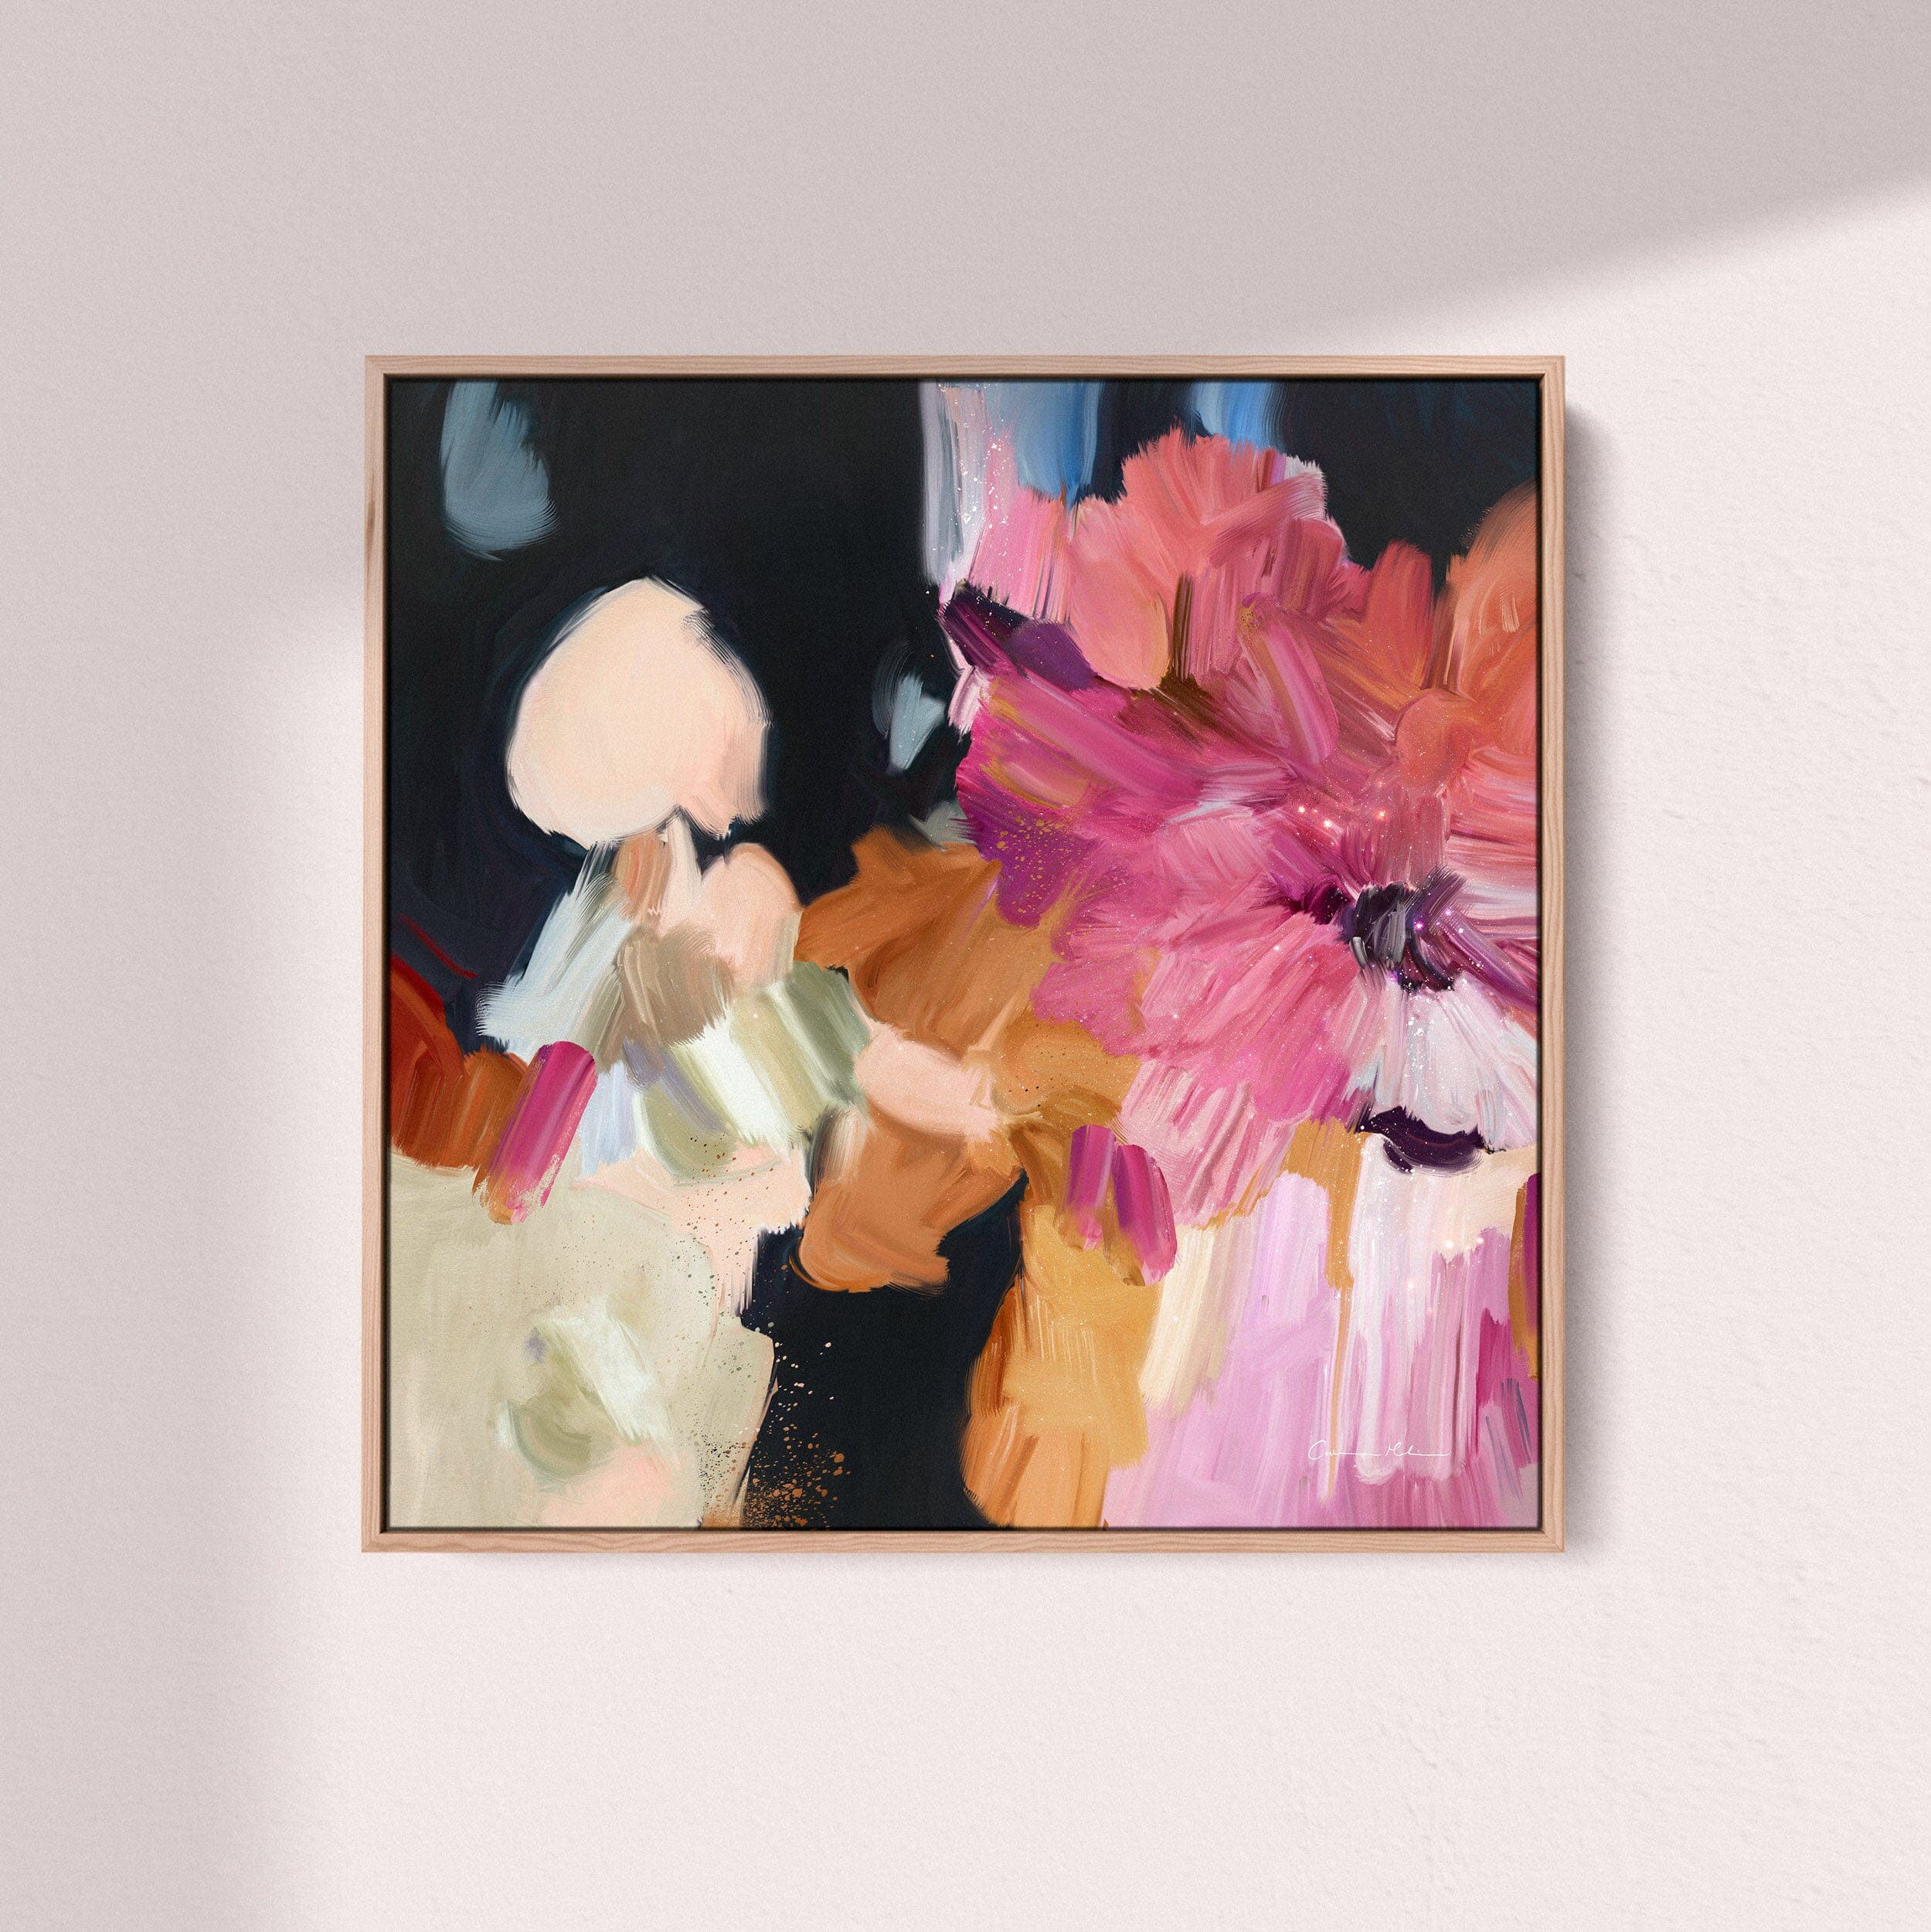 "Clara Auri No. 4" on Canvas Canvas Wall Art Corinne Melanie Professionally Framed - Oak 20x20in / 50x50cm 